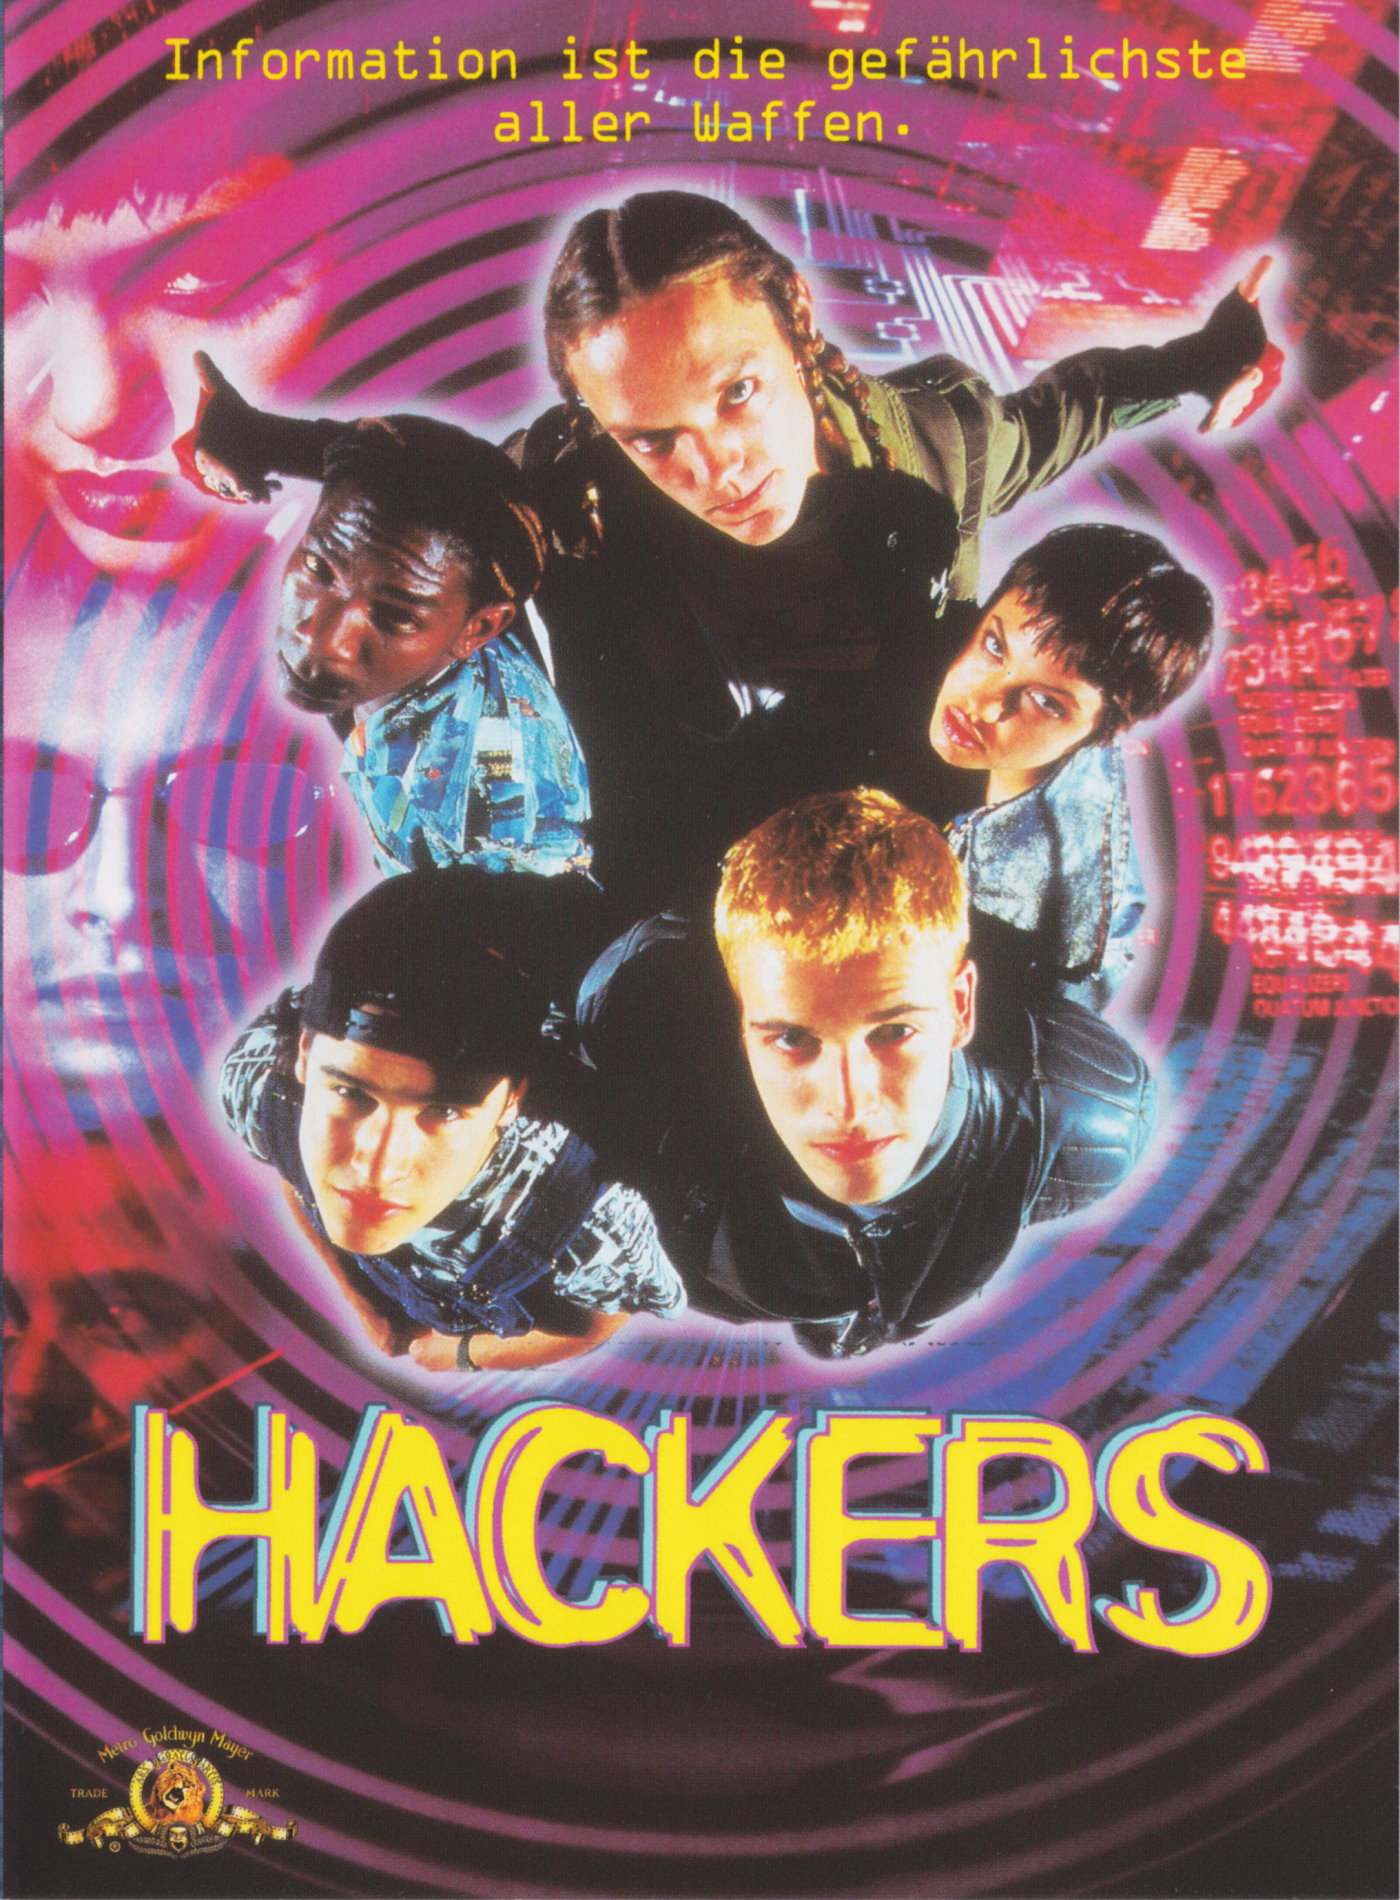 Cover - Hackers.jpg